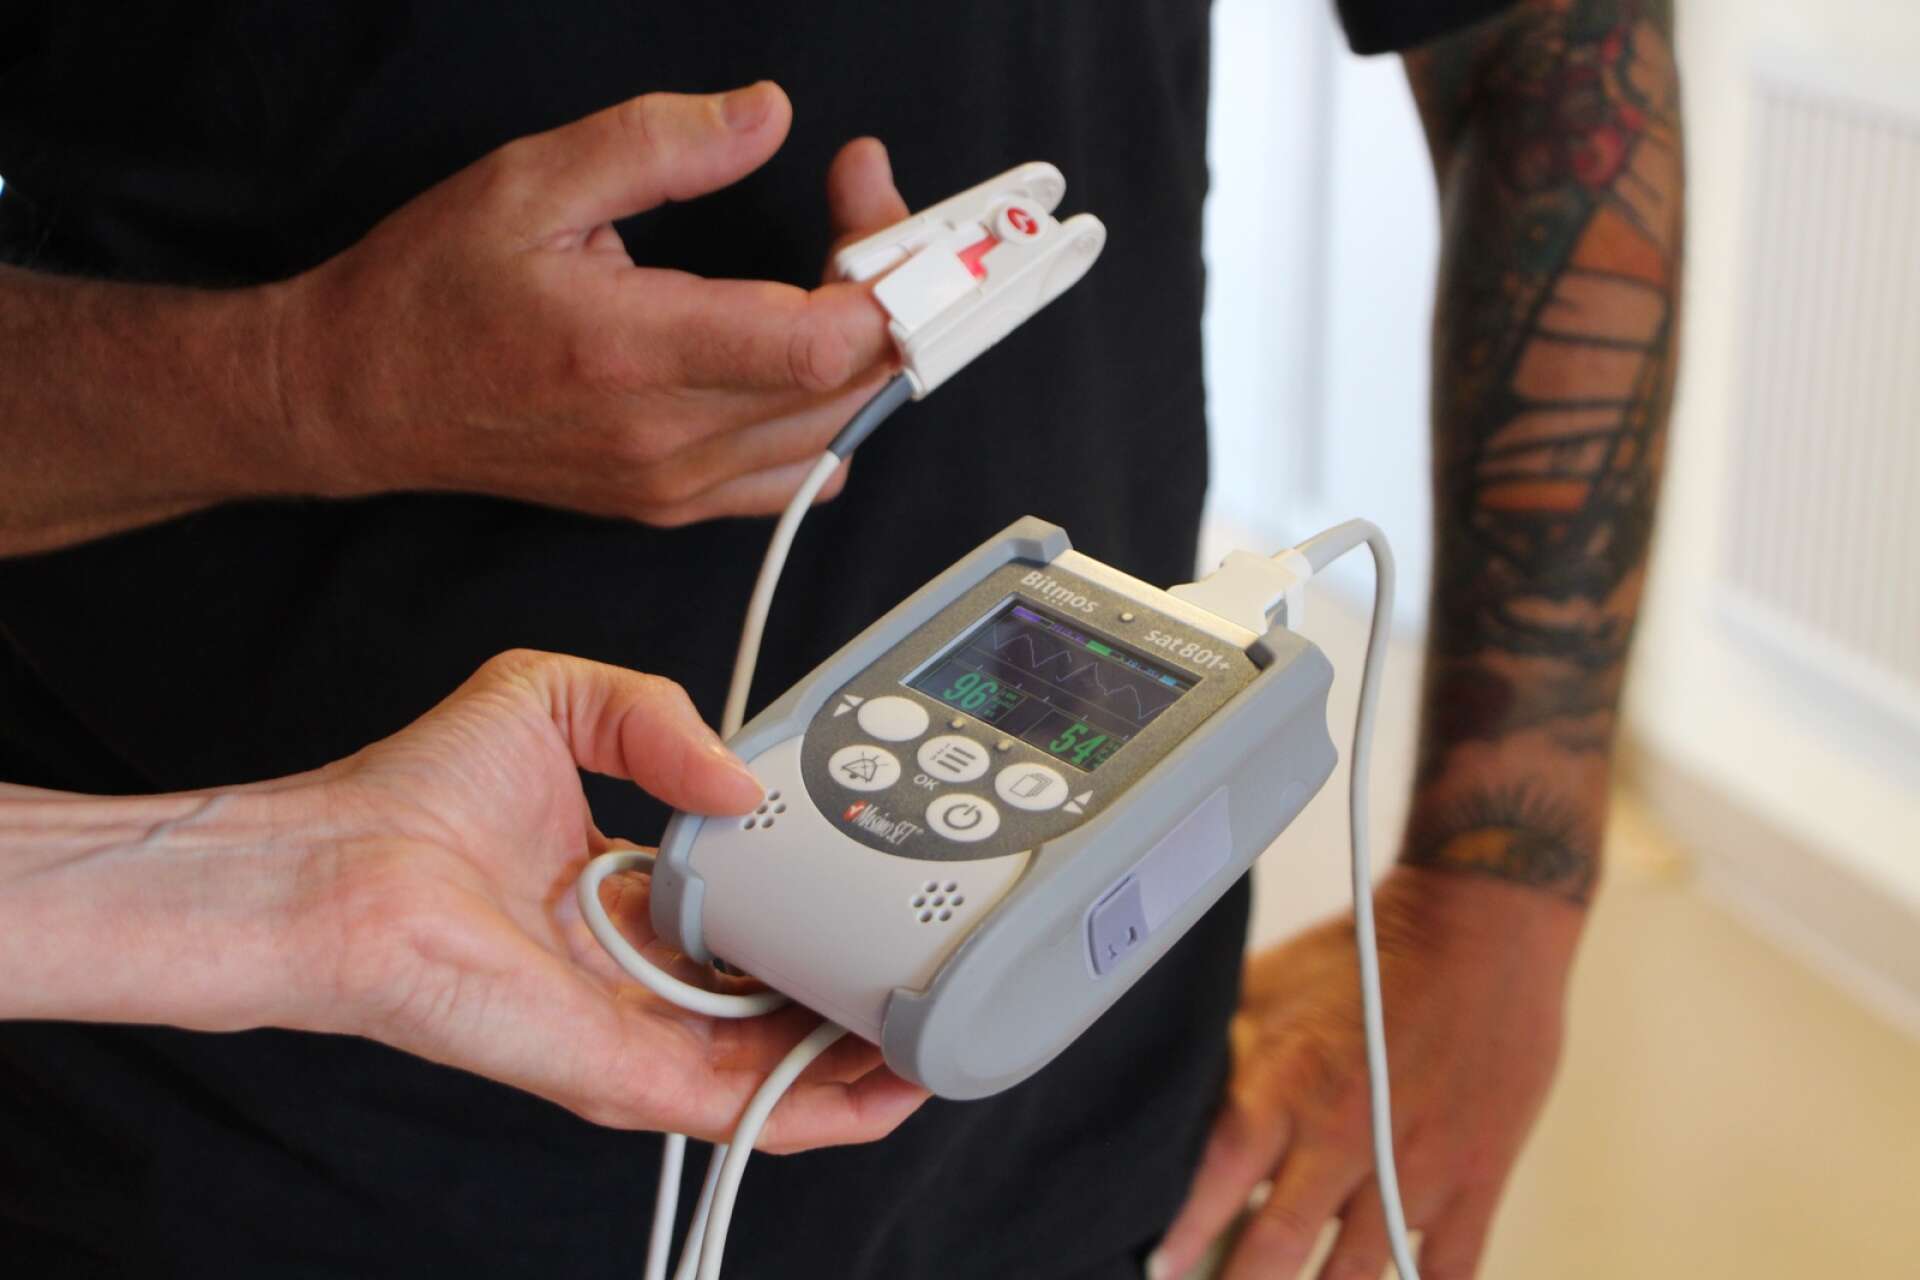 Att mäta syresättning och puls under rörelse är ett bra verktyg för att se måendet hos en patient med symptom av postcovid.